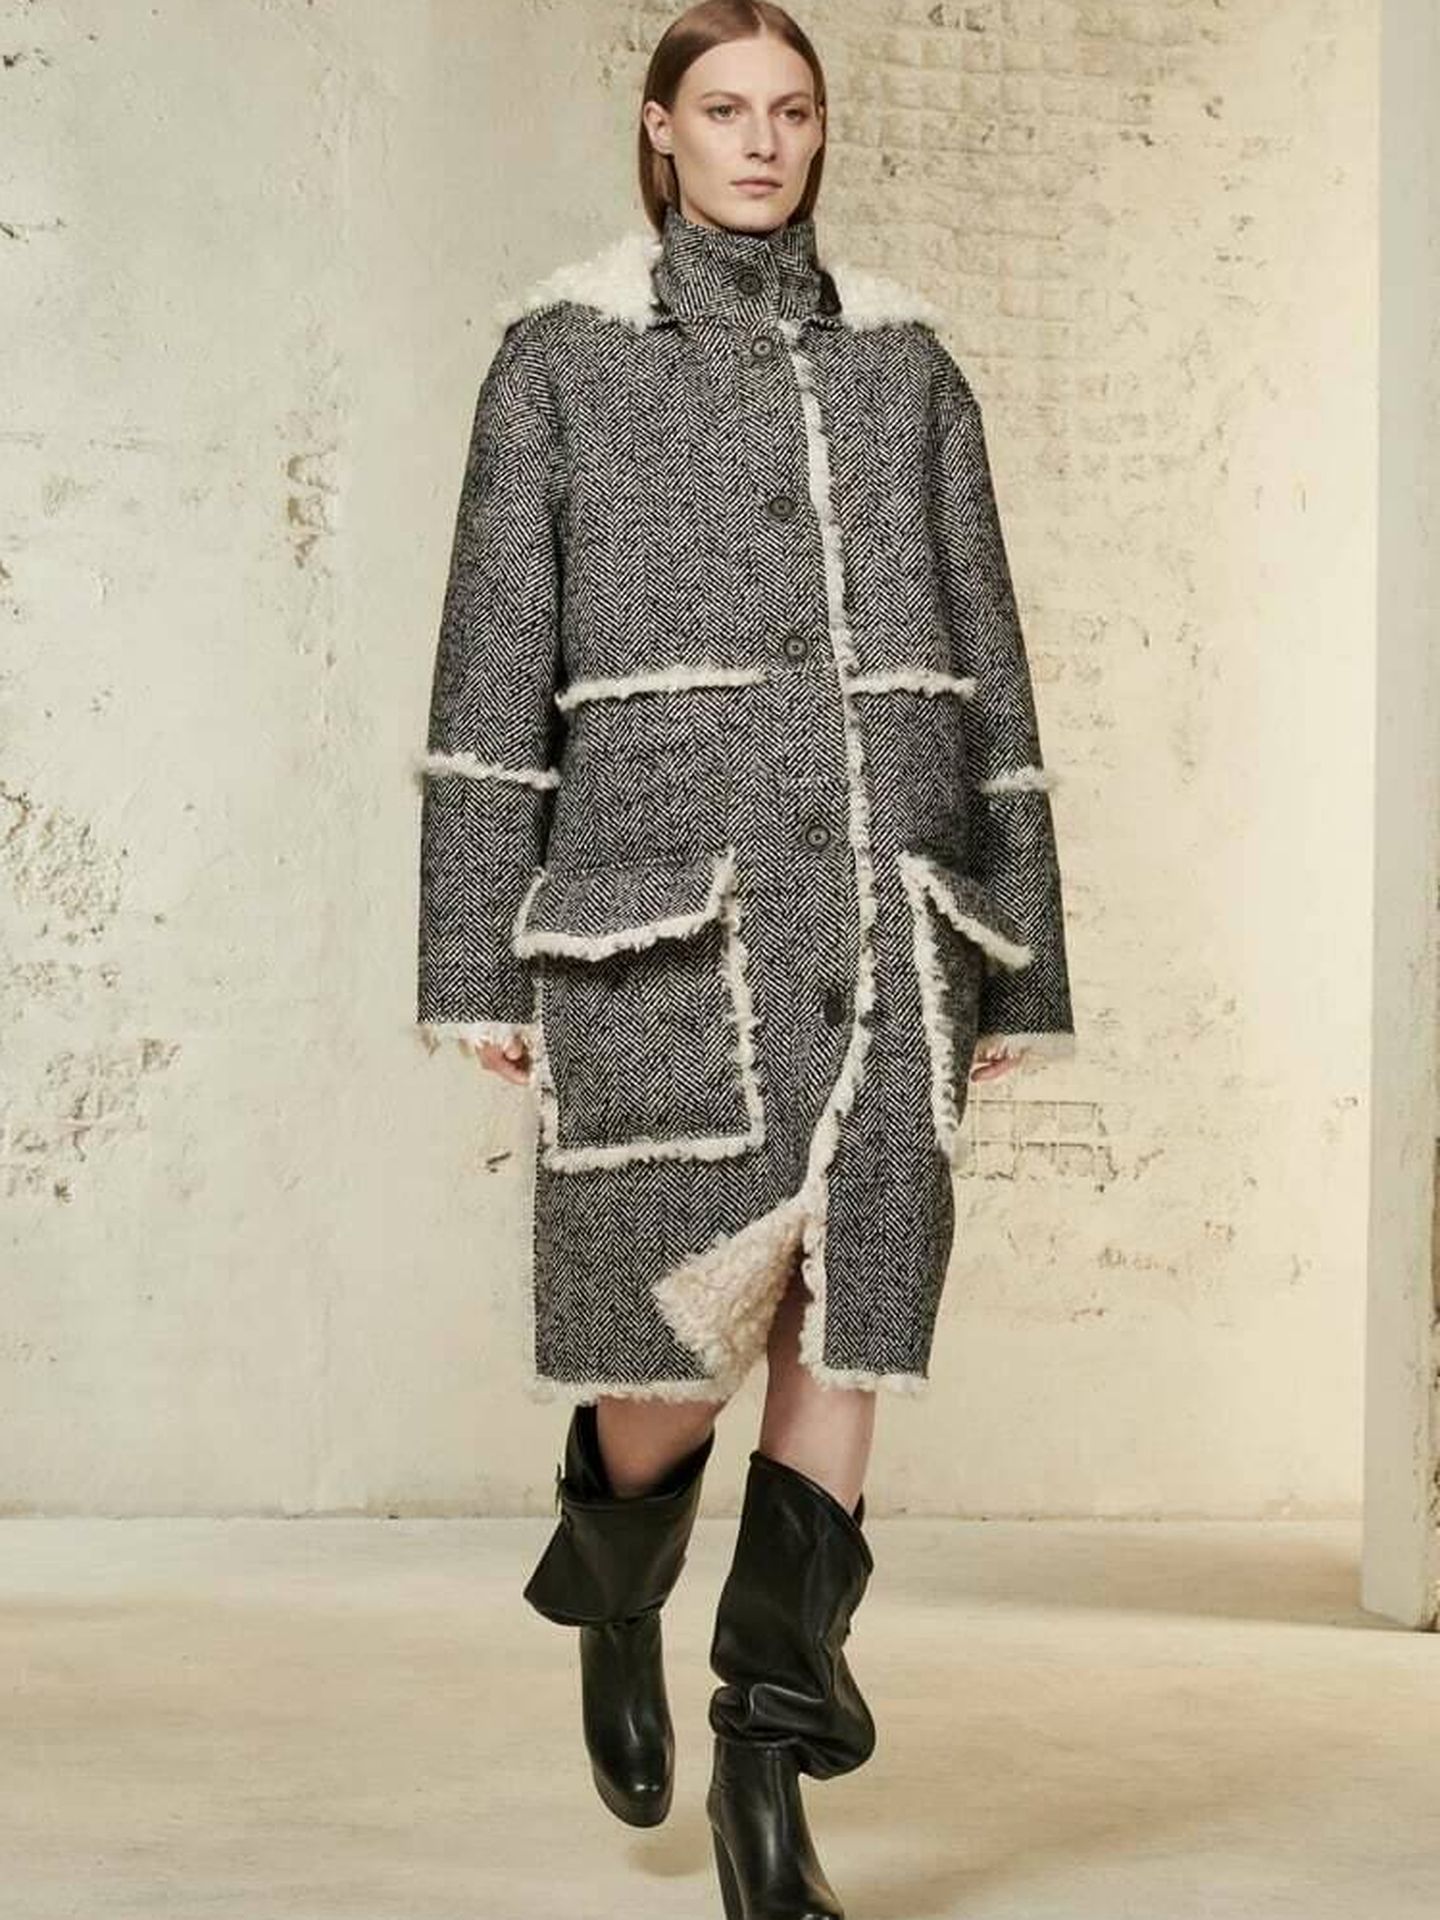 El nuevo abrigo de la colección SRPLS de Zara. (Cortesía)